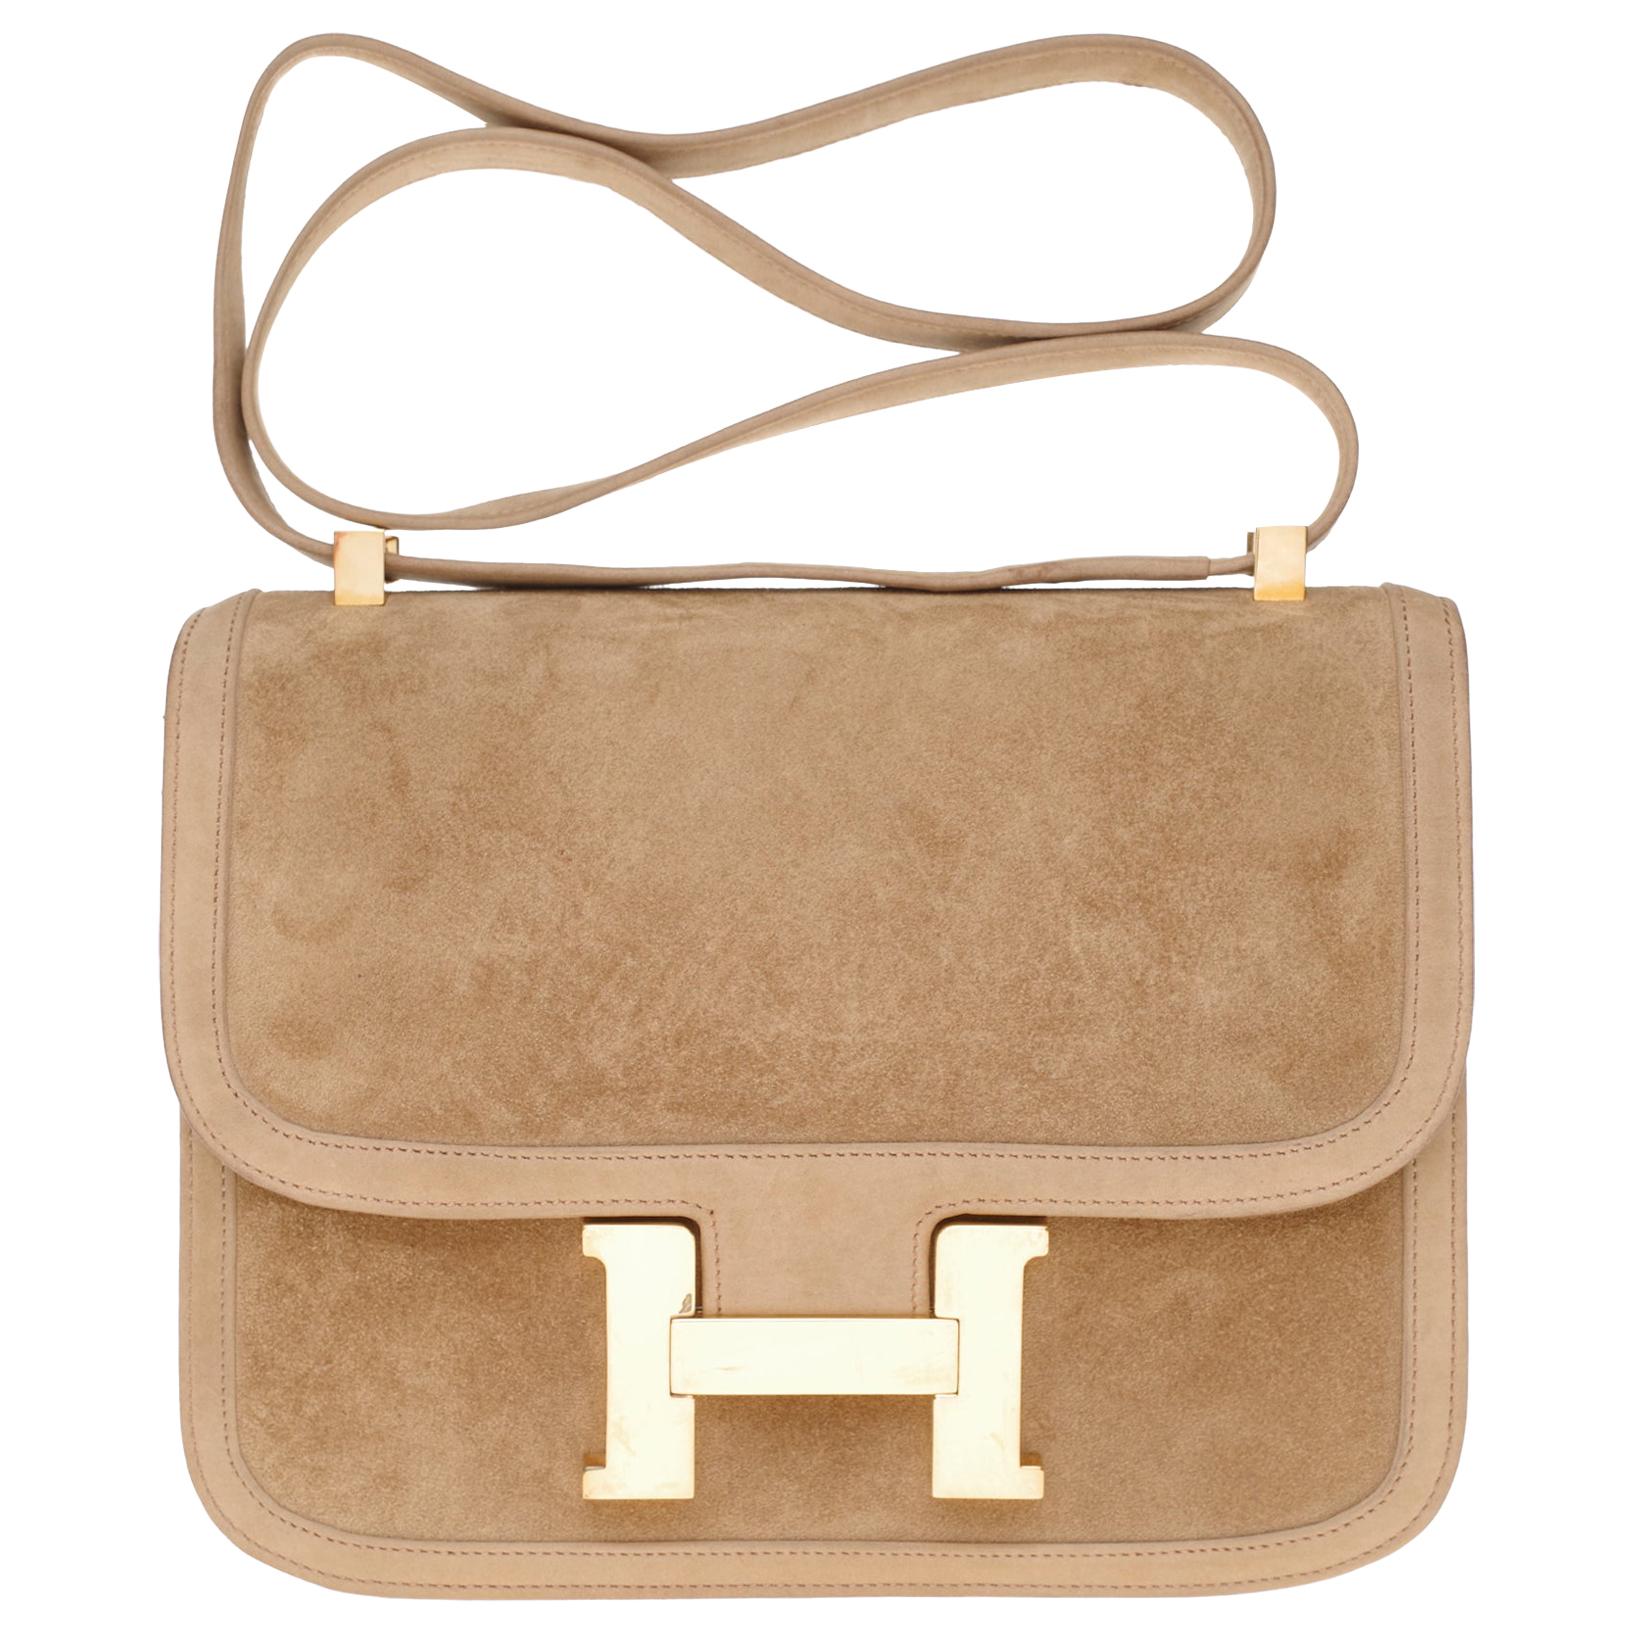 VERY RARE Hermes Constance  DOBLIS shoulder bag in sand color & Gold hardware!